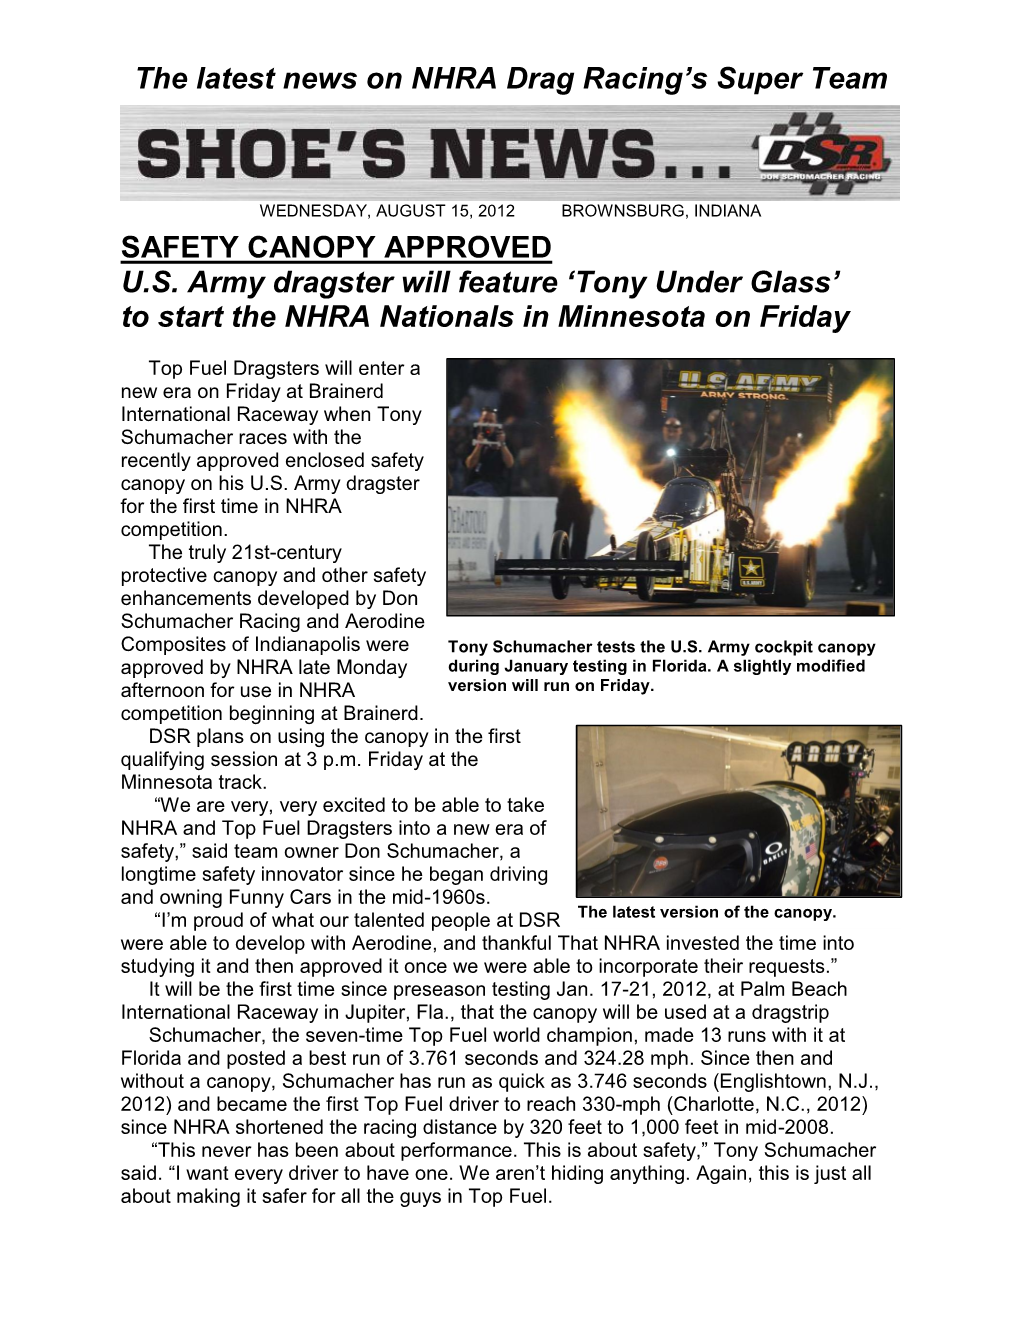 The Latest News on NHRA Drag Racing's